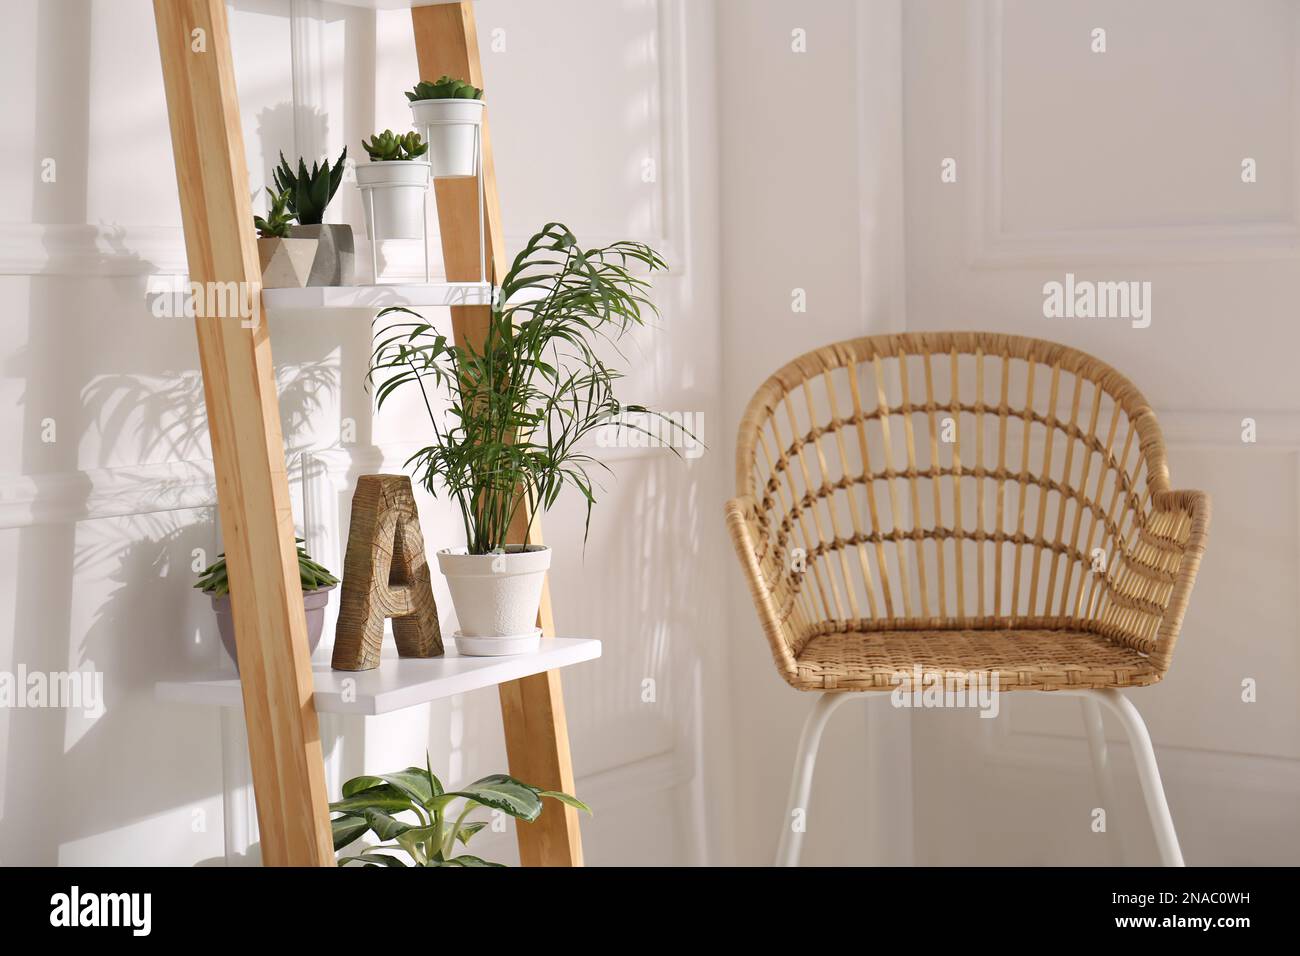 https://c8.alamy.com/compes/2nac0wh/elegante-escalera-decorativa-con-plantas-de-interior-y-silla-en-sala-de-luz-2nac0wh.jpg